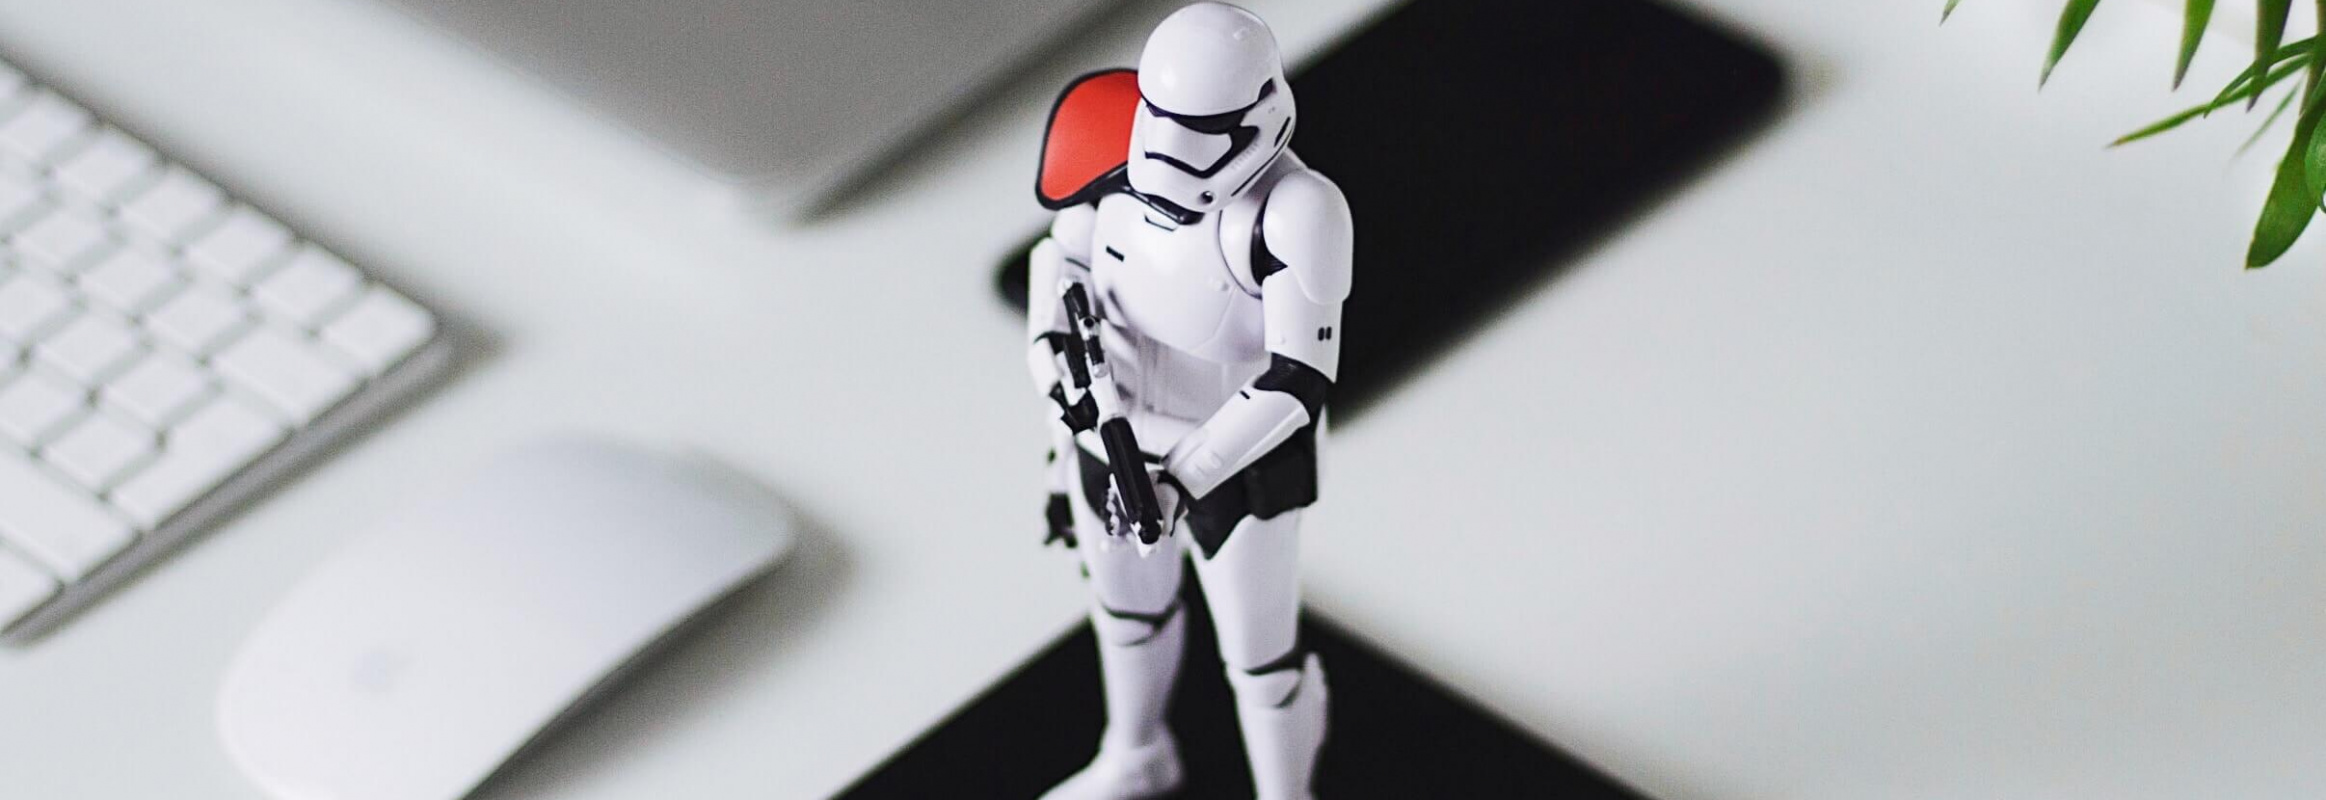 Stormtrooper Keyboard